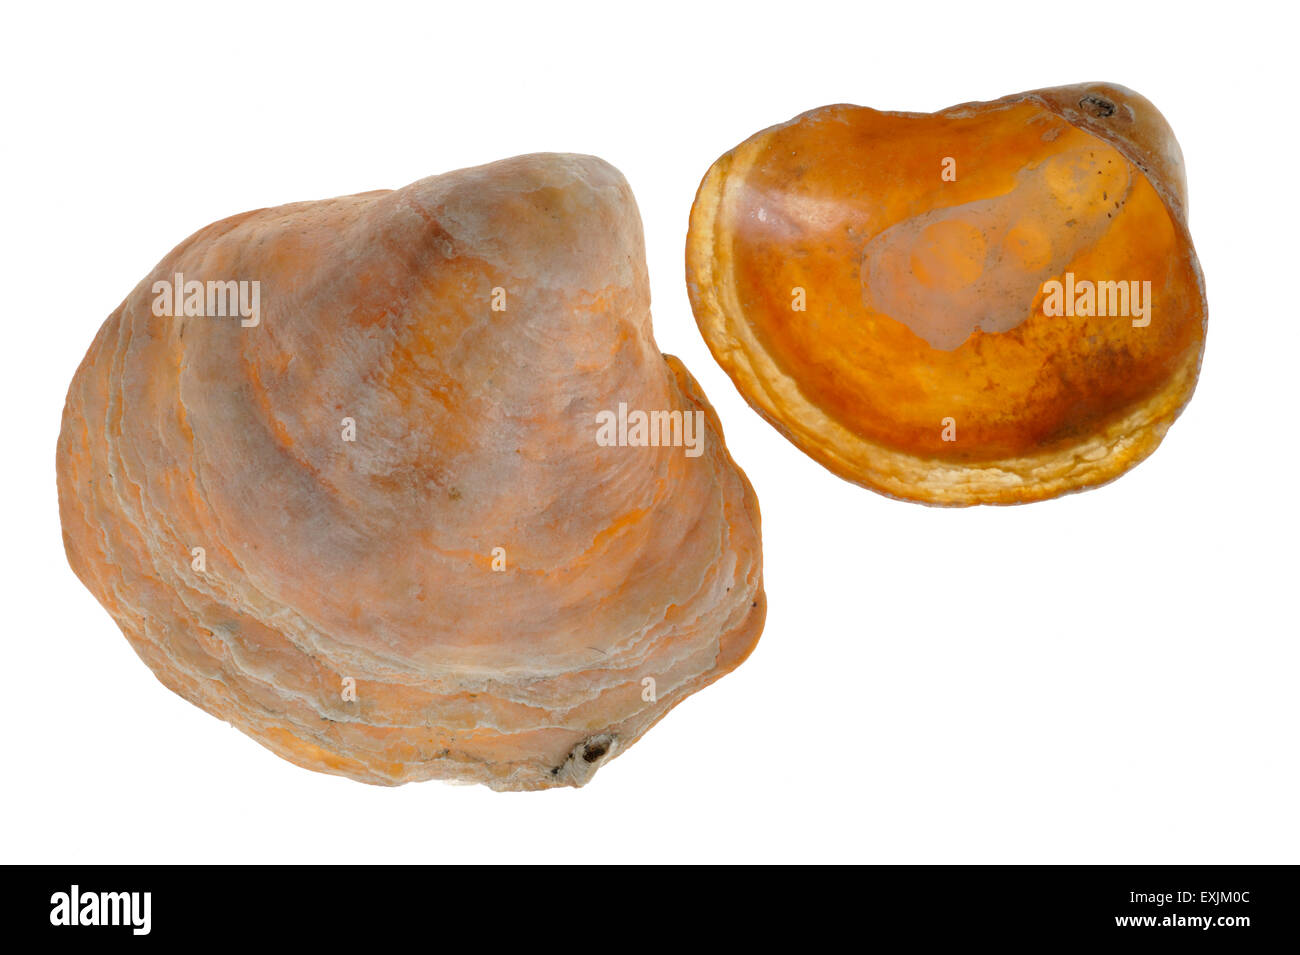 Saddle oysters / Jingle shells (Anomia ephippium) on white background Stock Photo